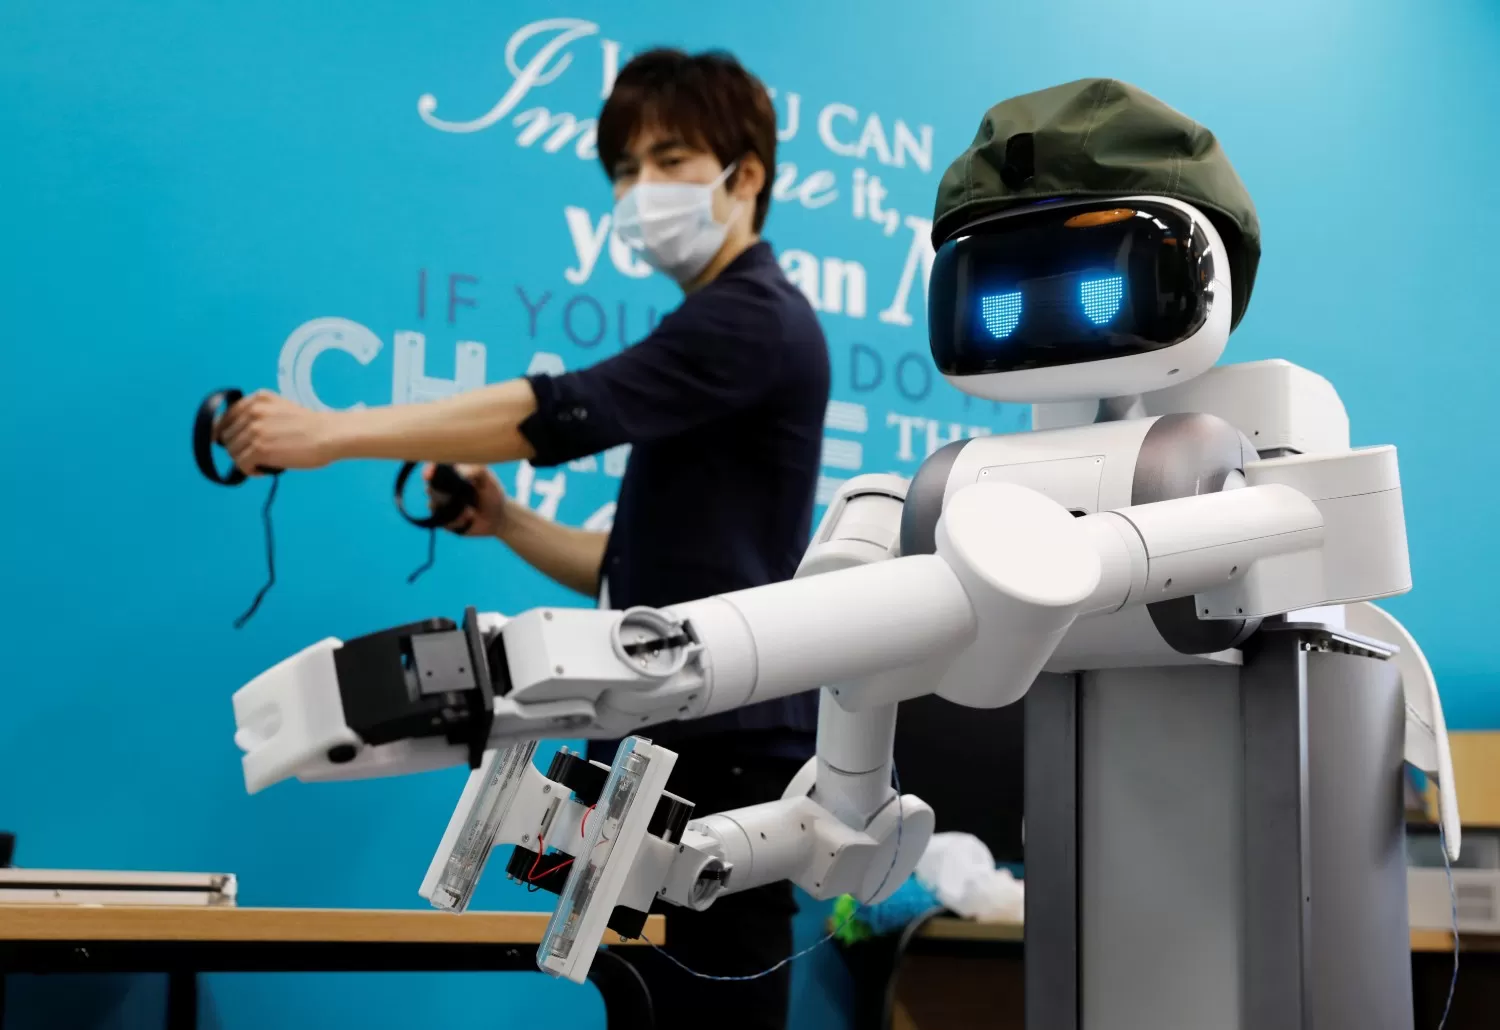 UGO. Si bien no fue creado con esos fines, el robot puede ayudar a luchar contra la pandemia.